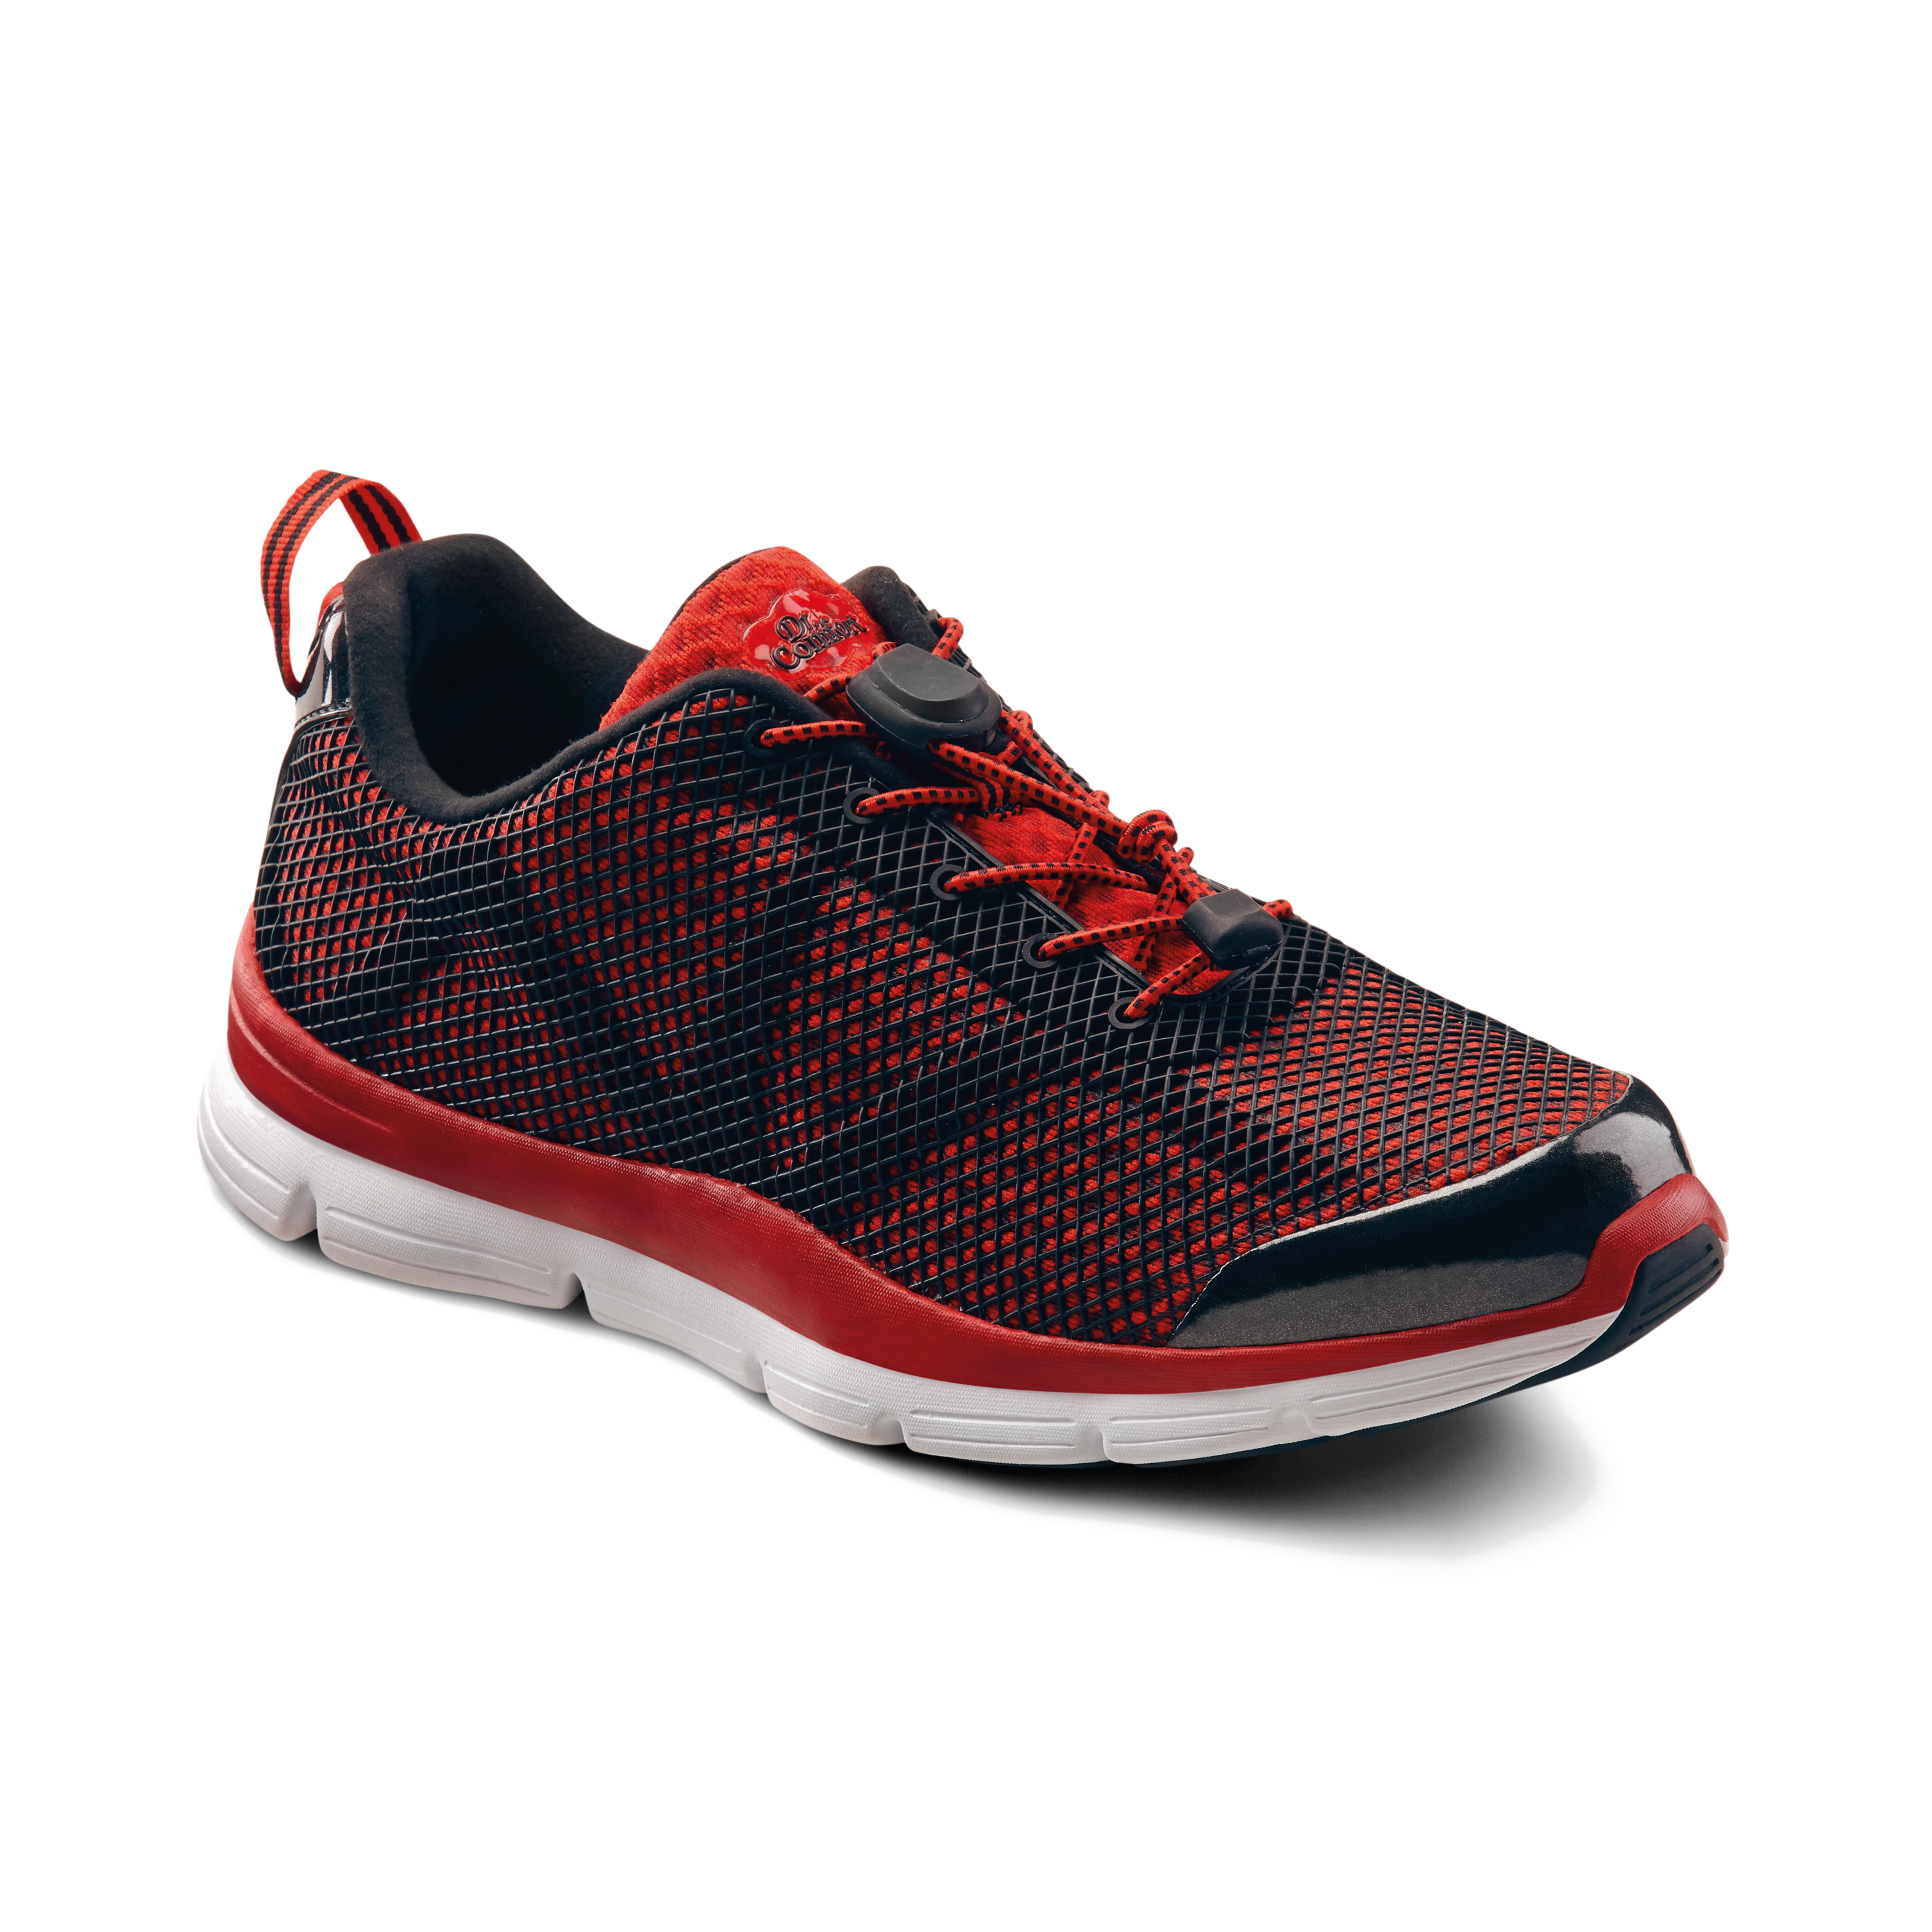 Produktbild DR. COMFORT® Jason rot, Orthopädische Schuhe, Besonders weicher und leichter Freizeit- und Aktivschuh